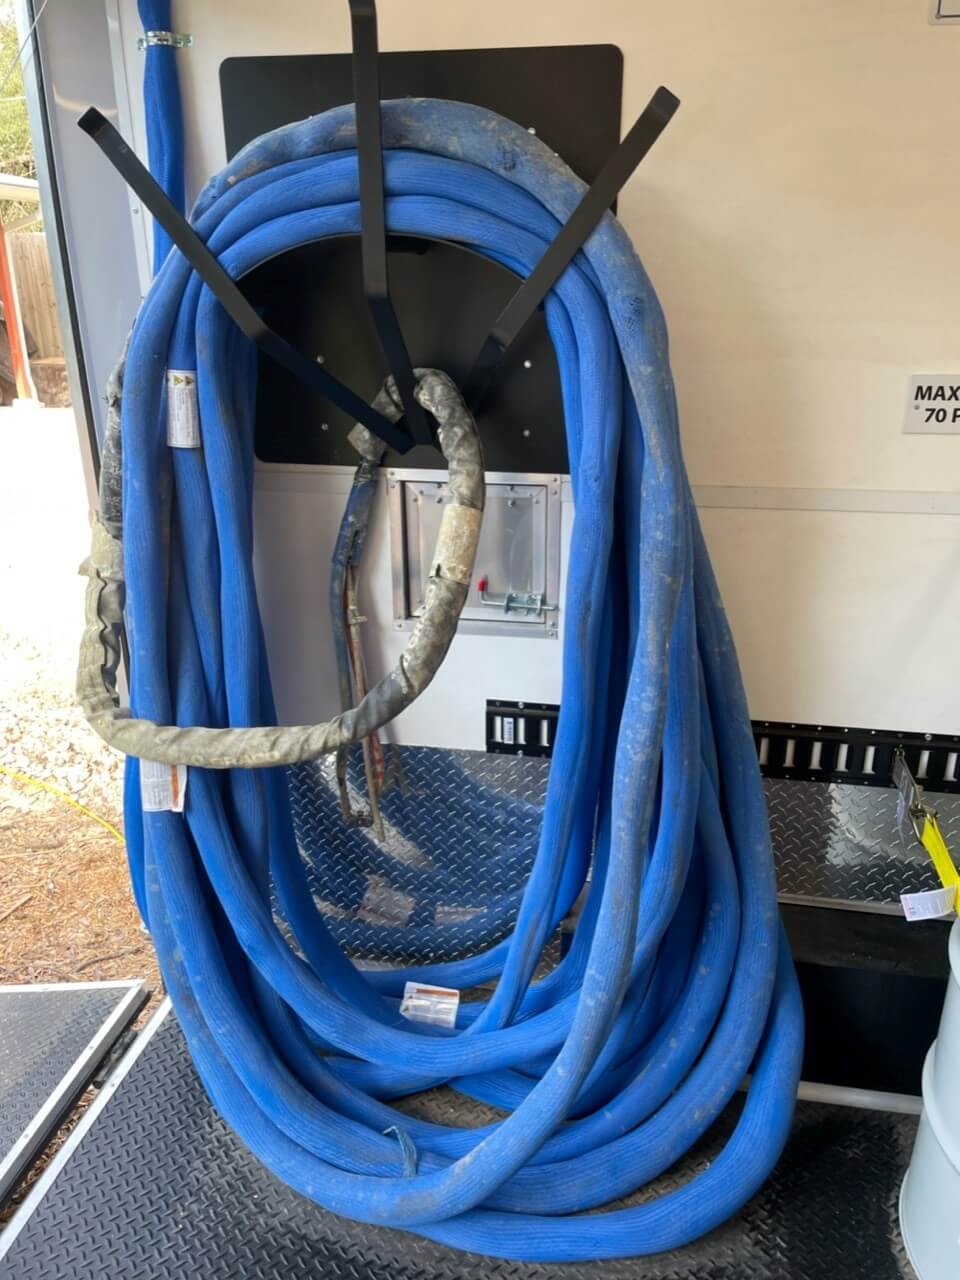 used hose on a hose rack